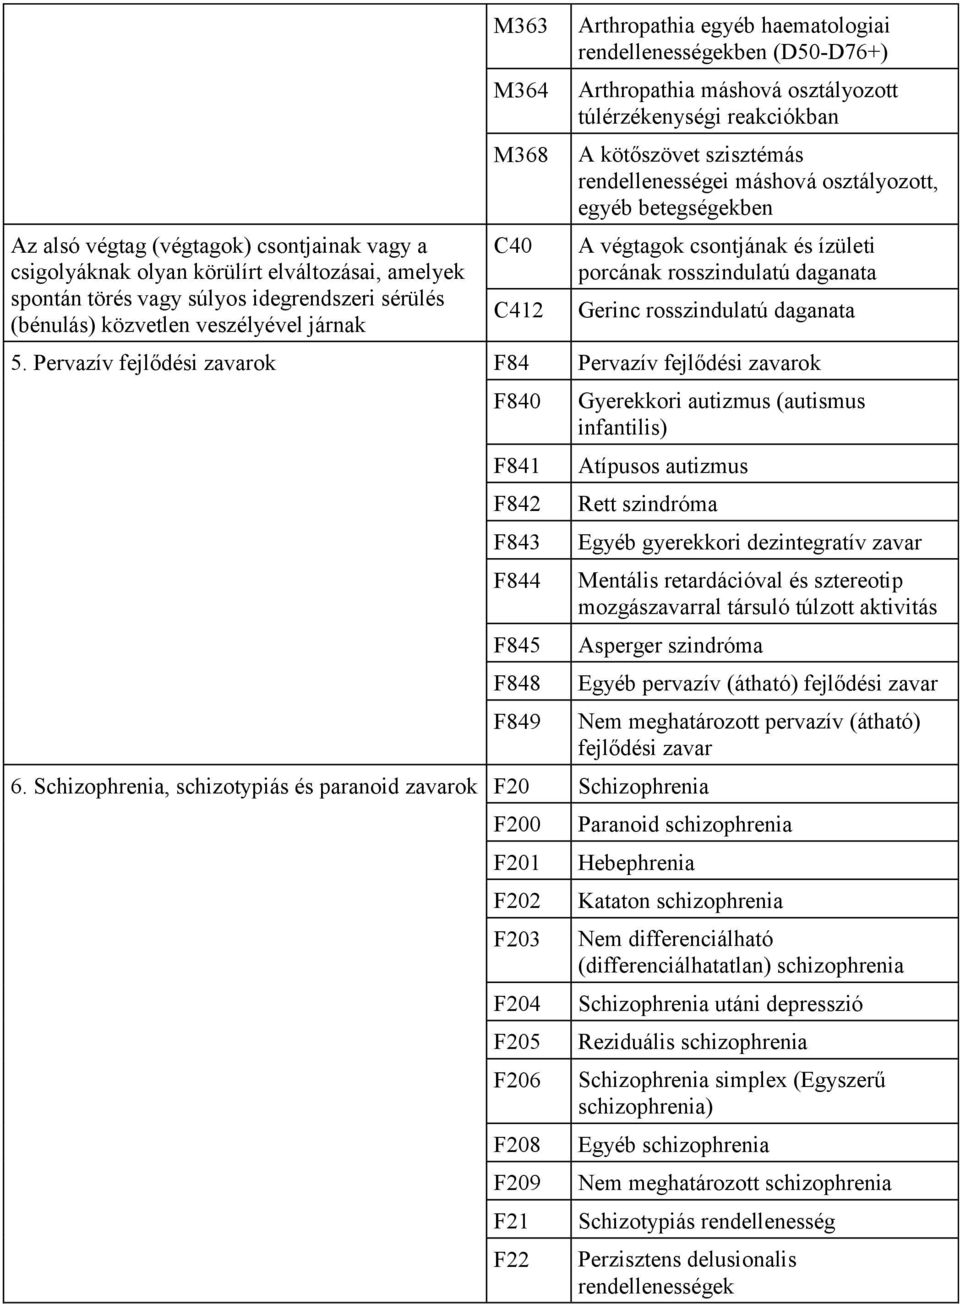 egyéb psoriasisos arthropathiák (l40 5))